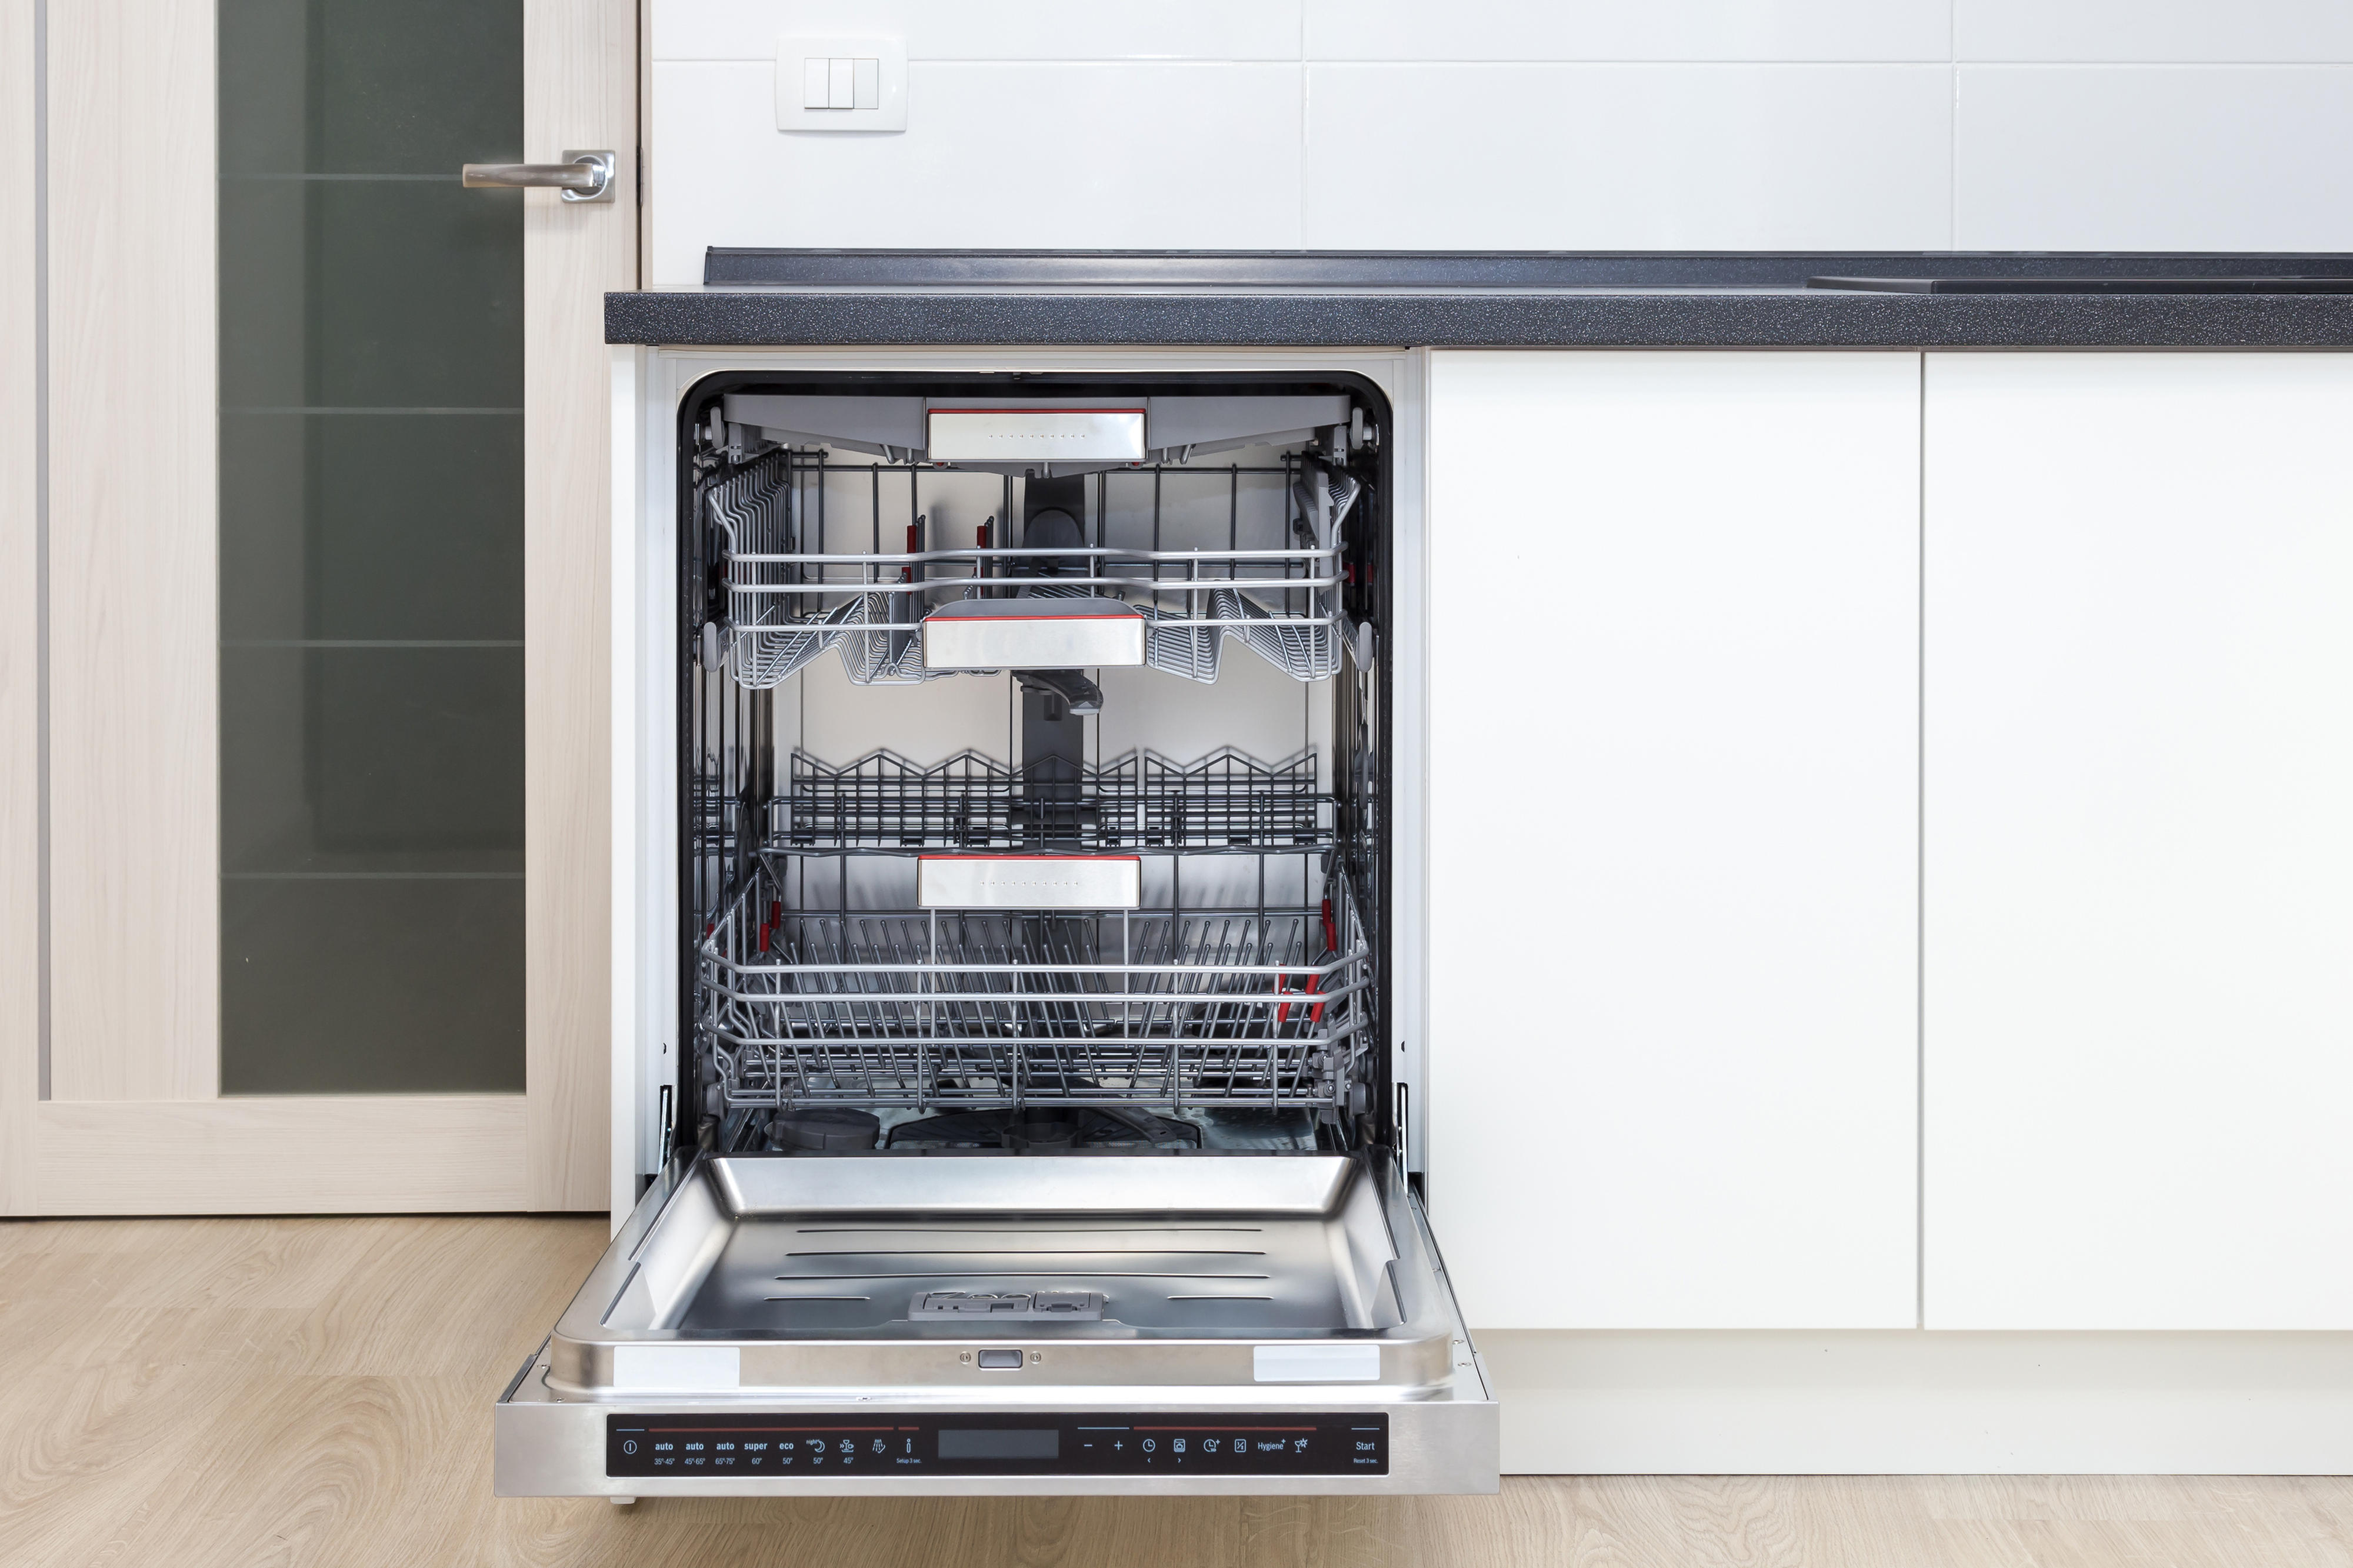 Hårdhed formel Brandmand Best i test oppvaskmakin - Se alle testvinnende oppvaskmaskiner | Elkjøp